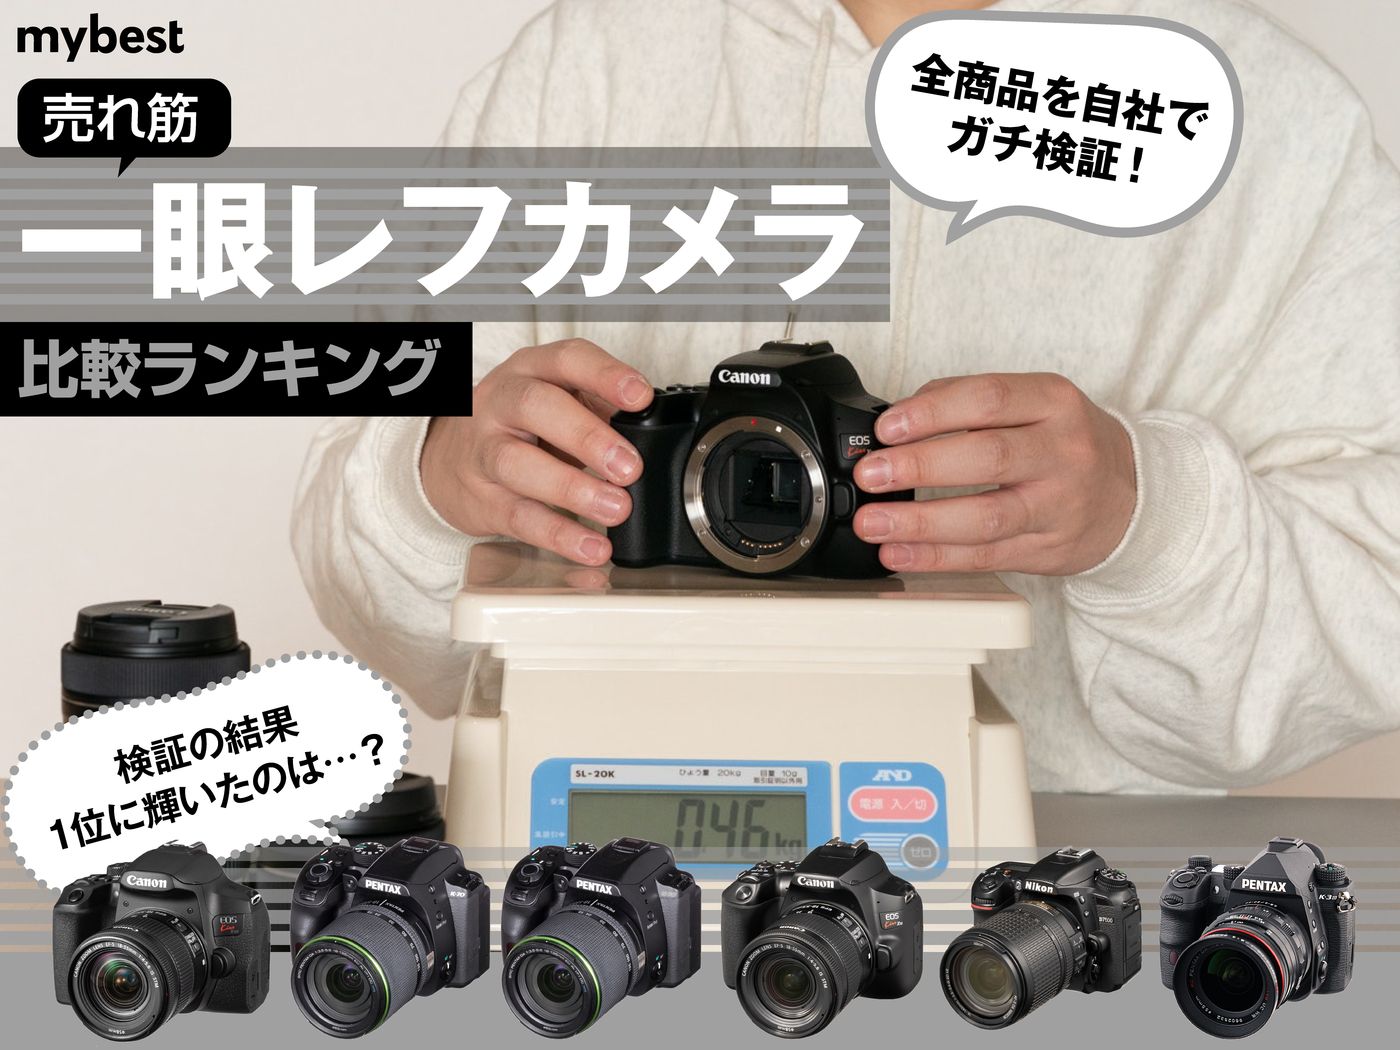 一眼レフカメラ 最新レンズ 動画快適 超高画質CANON EOS kiss X7 - カメラ